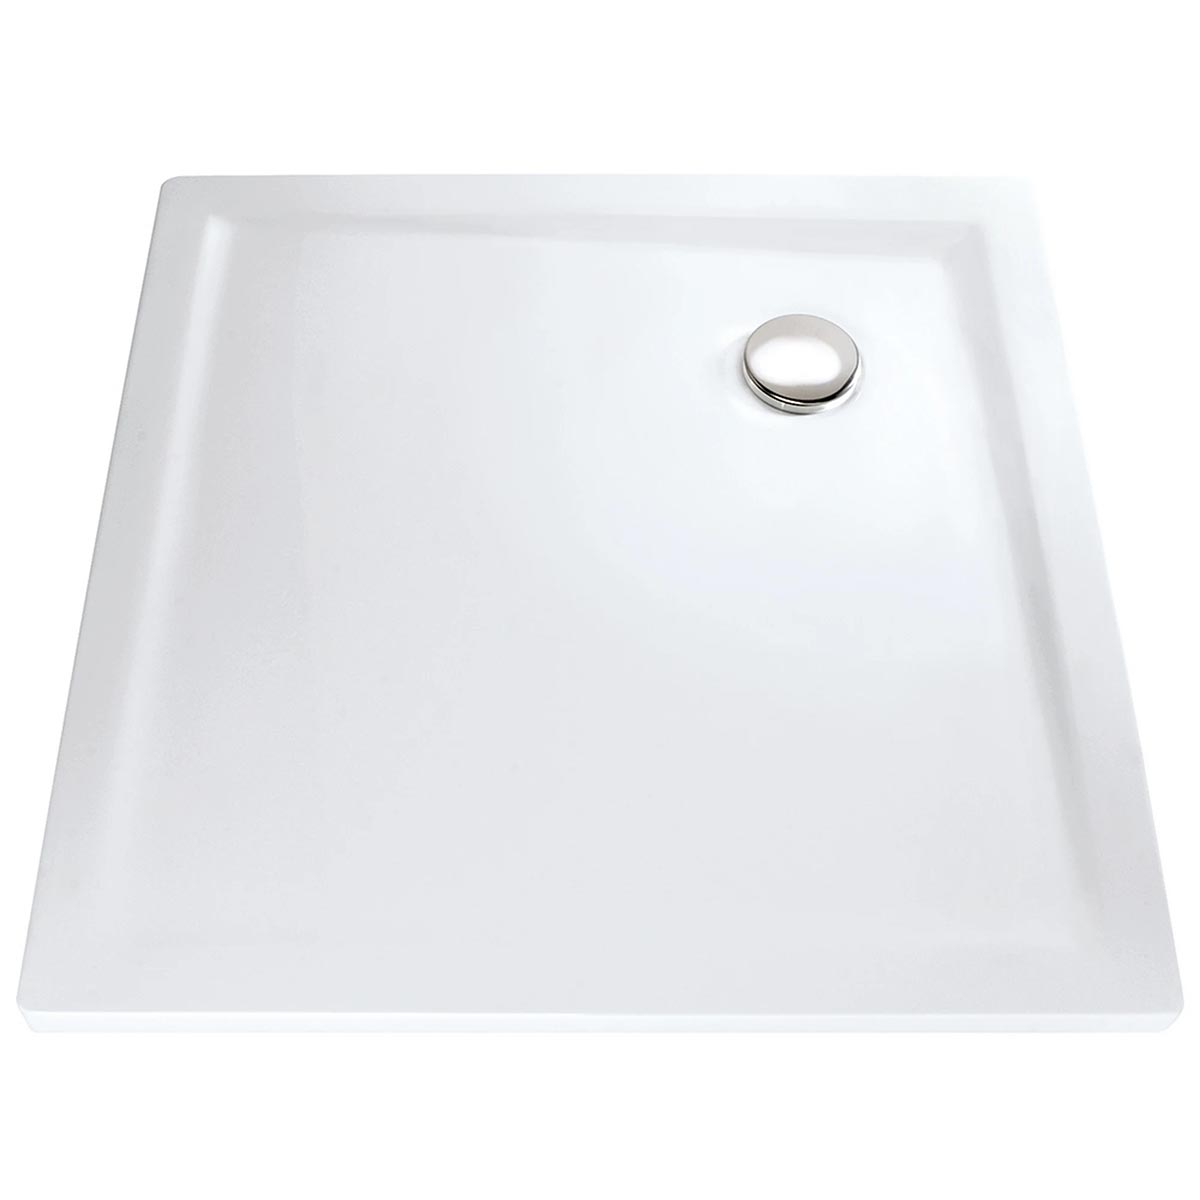 HSK Marmor-Polymer Quadrat Duschwanne superflach-Weiß-90 x 90 cm-mit AntiSlip-Beschichtung-mit Aquaproof-Dichtset